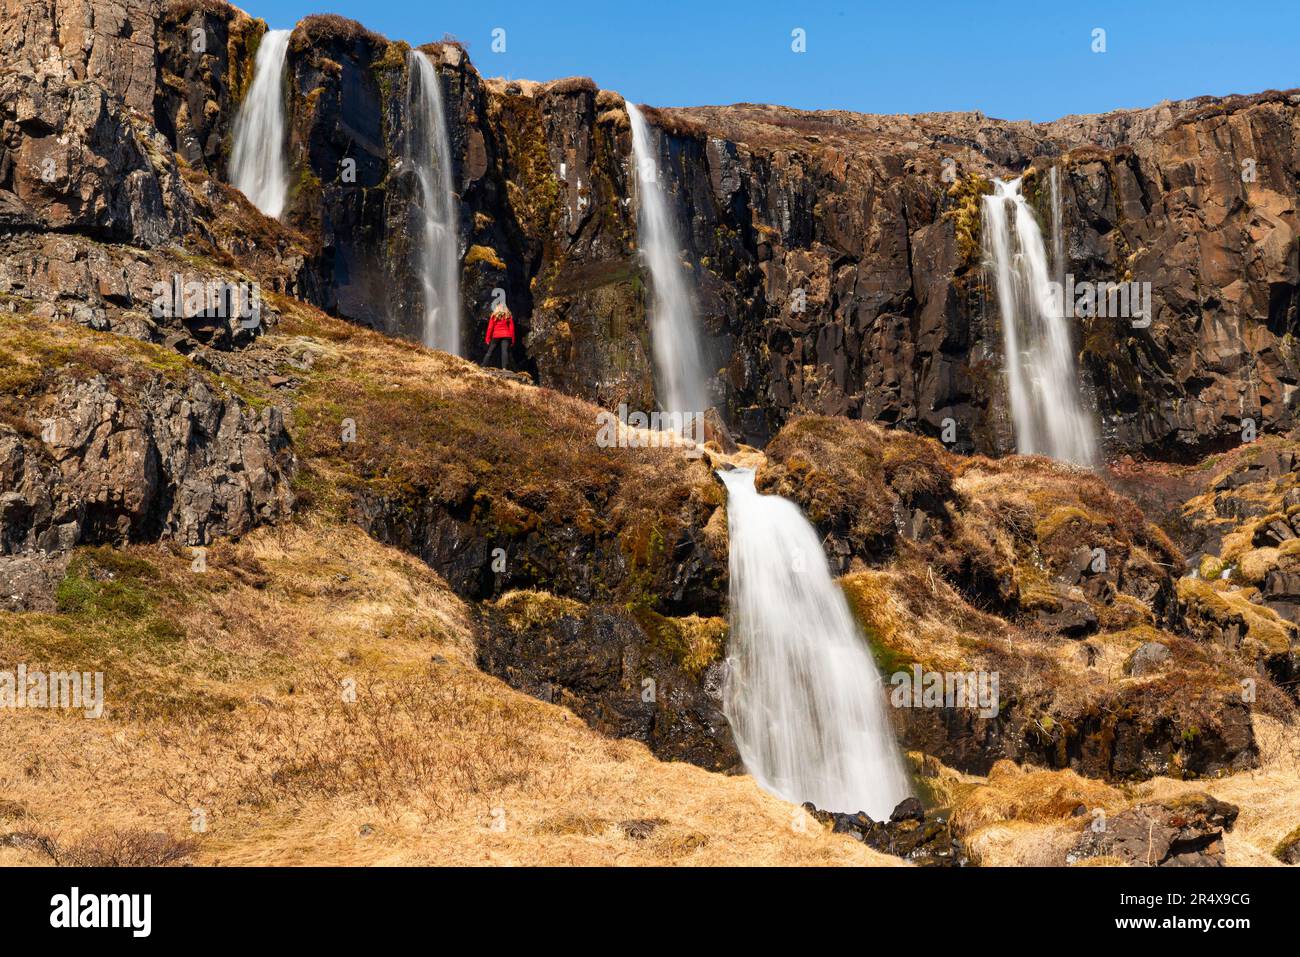 Vue panoramique d'une femme debout sur une pente de flanc de falaise en face d'une série de cascades, certaines au-dessus et en dessous, coulant des falaises escarpées... Banque D'Images